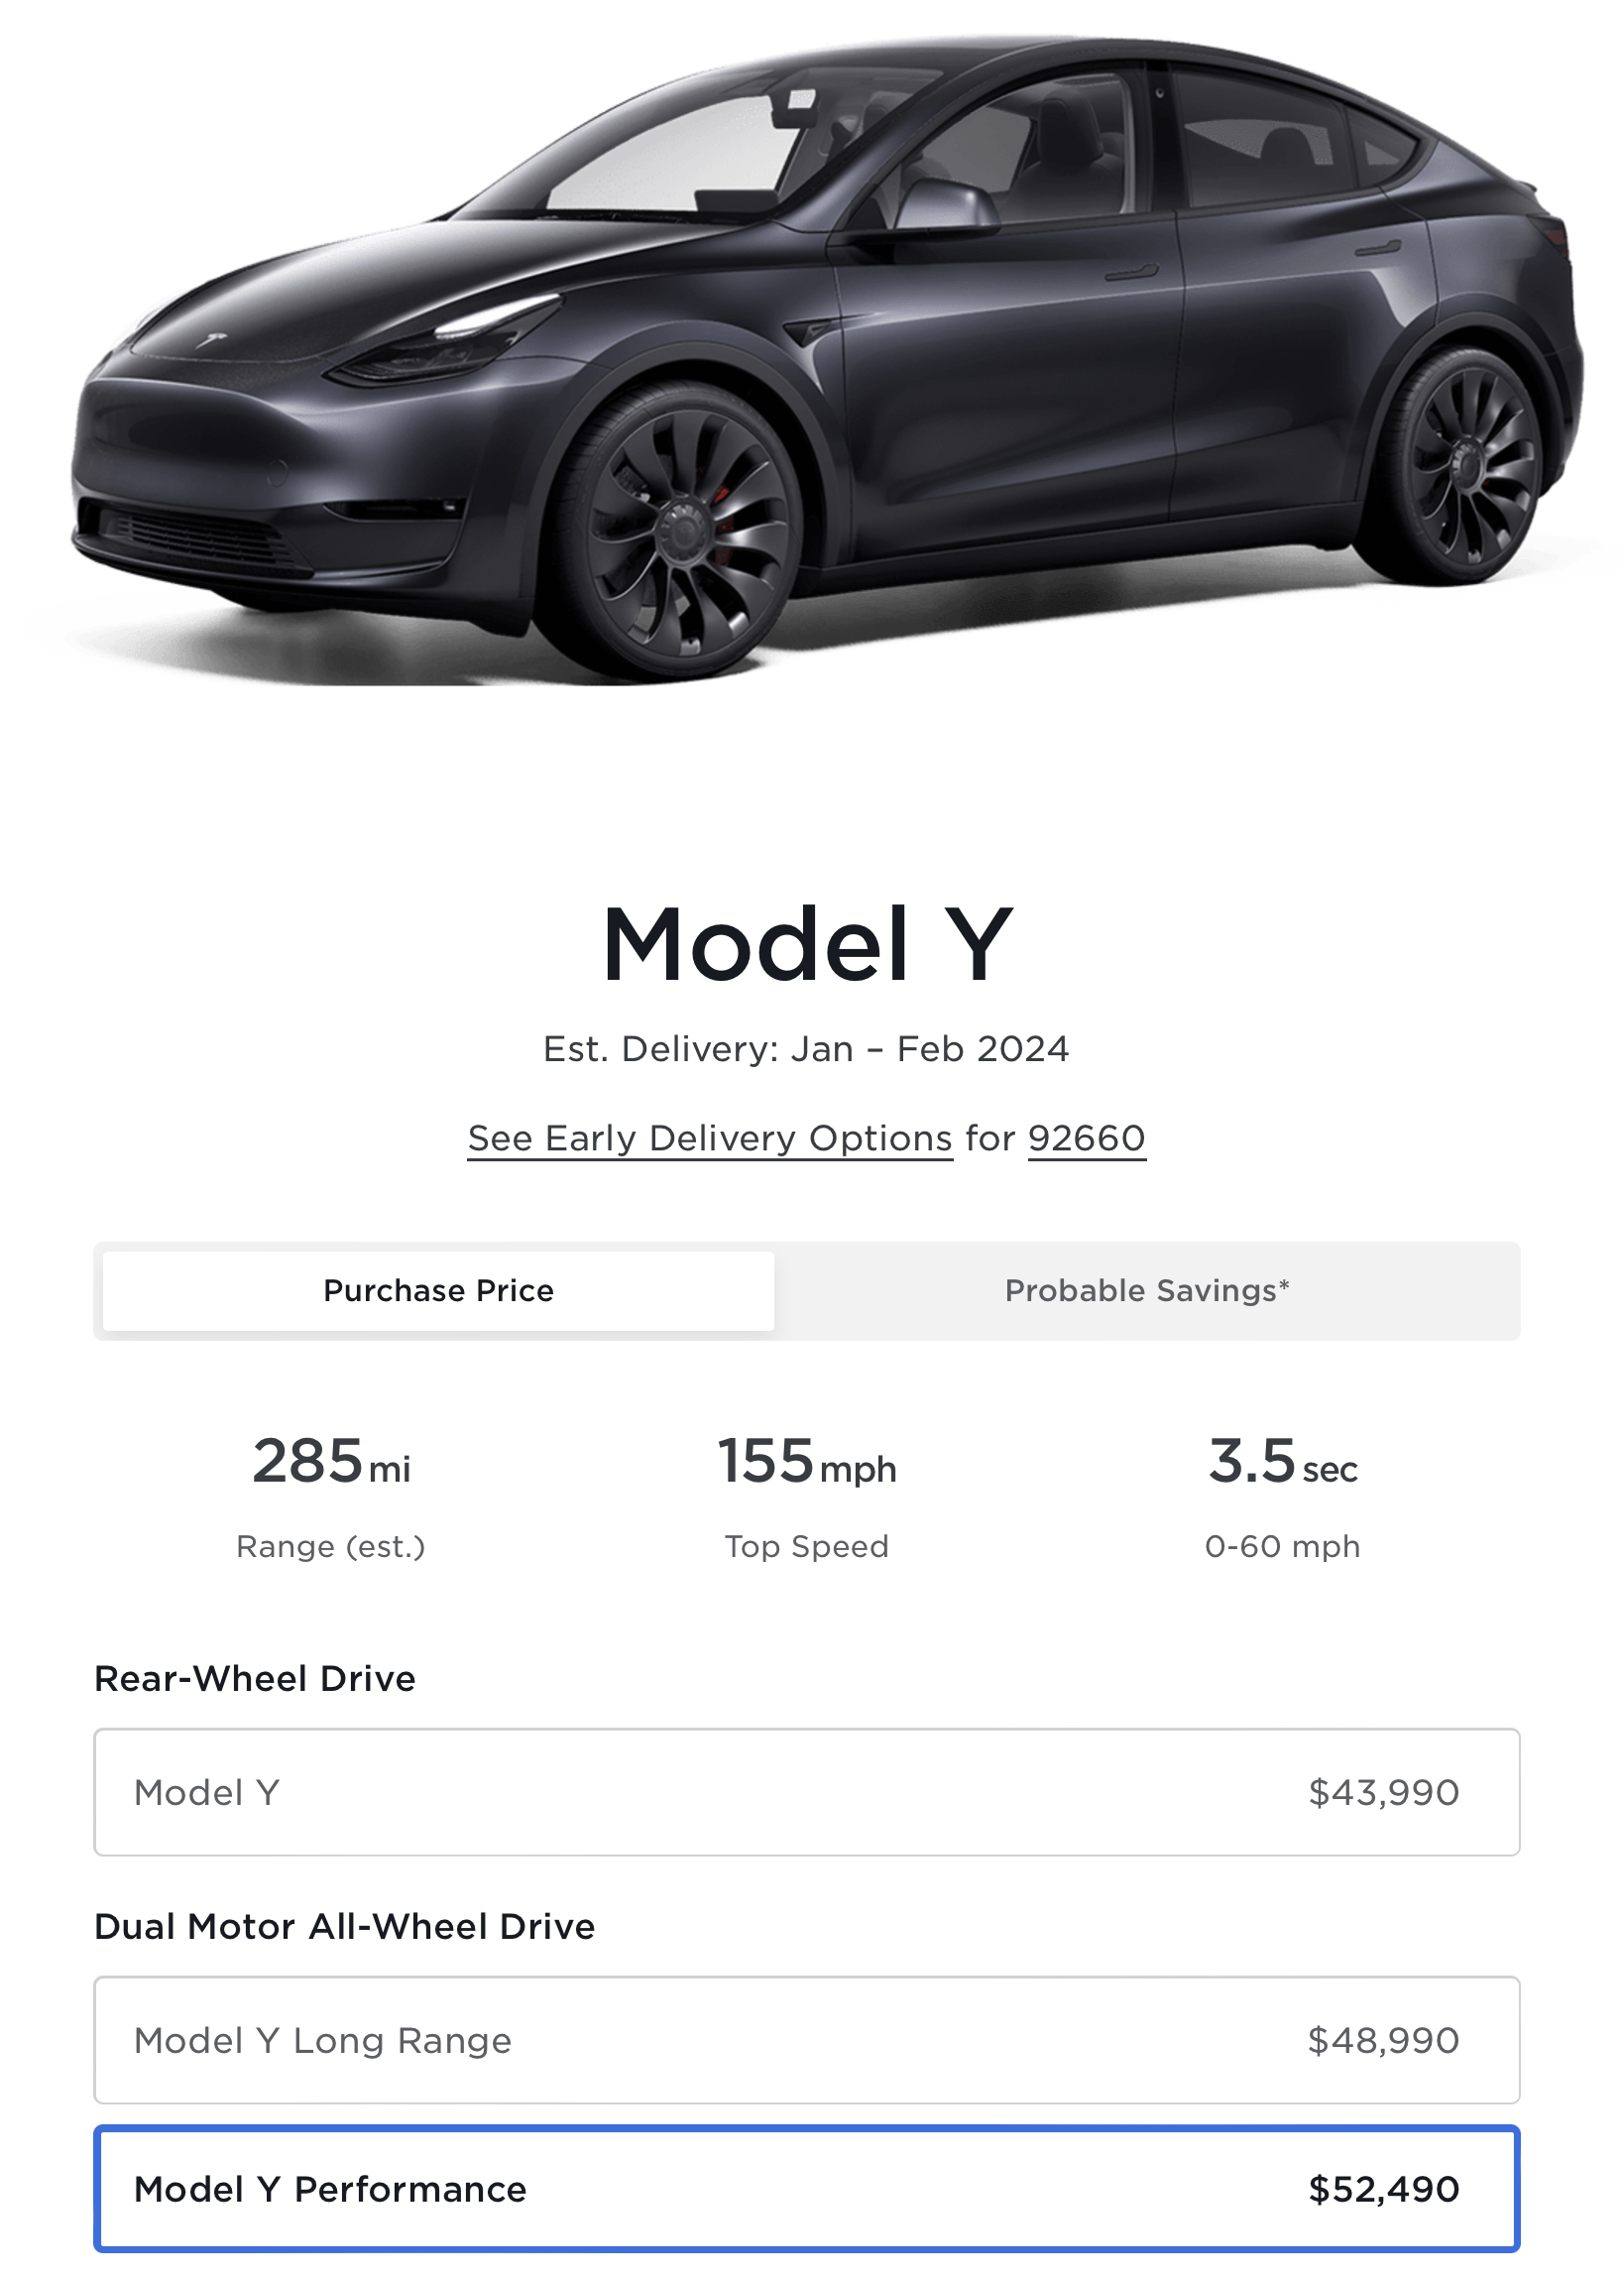 Tesla Model Y range estimate reduced by 6, more realistic